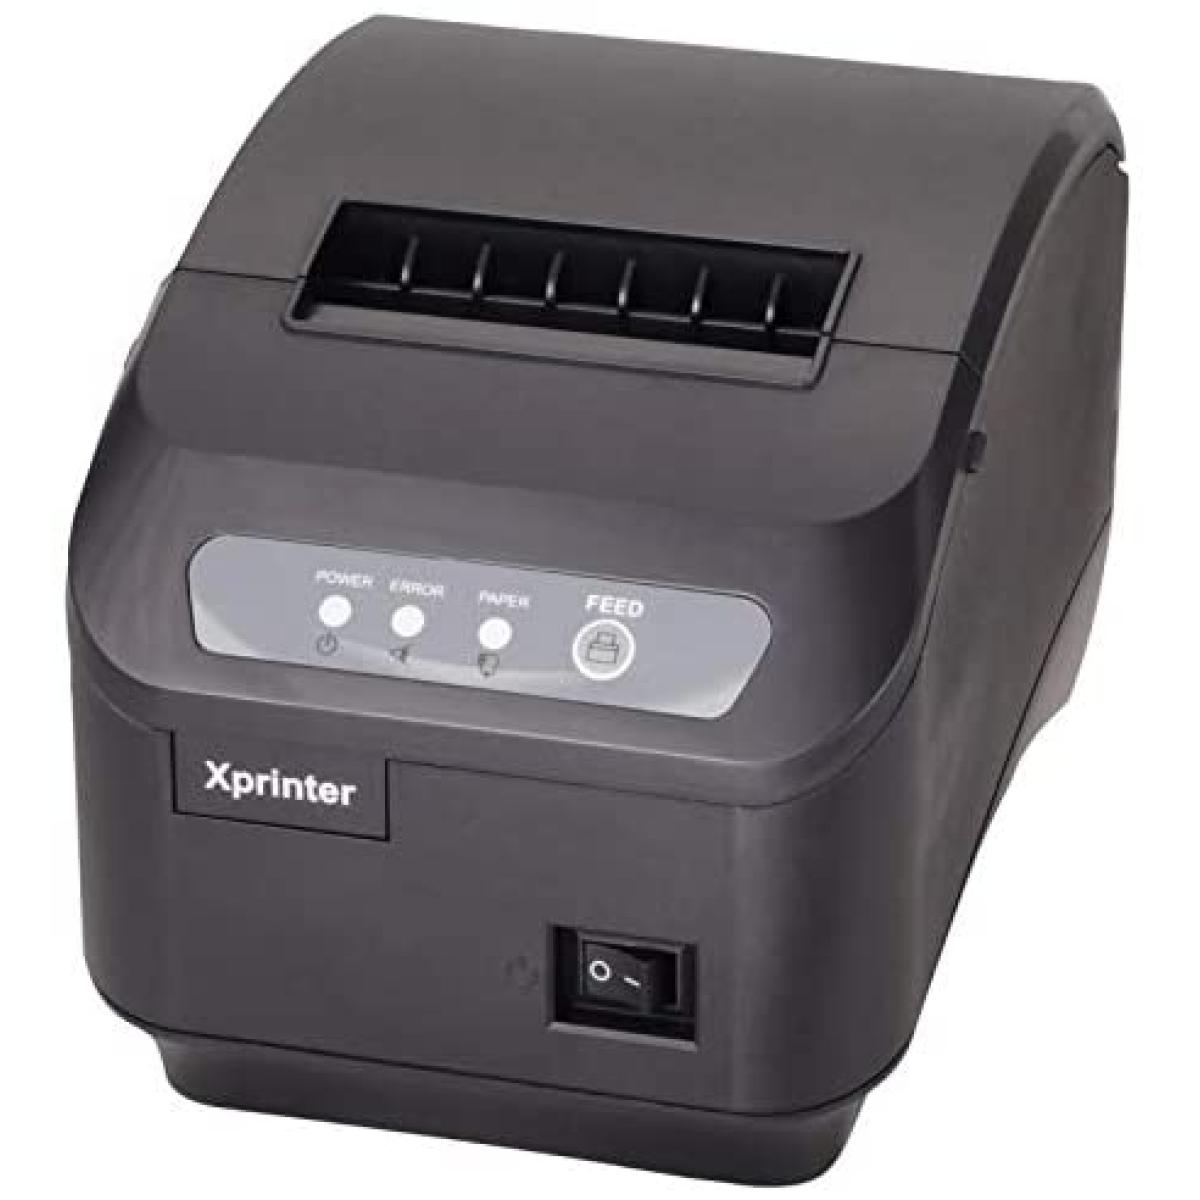 Xprinter XP-S200M Receipt Printer S200M USB/LAN